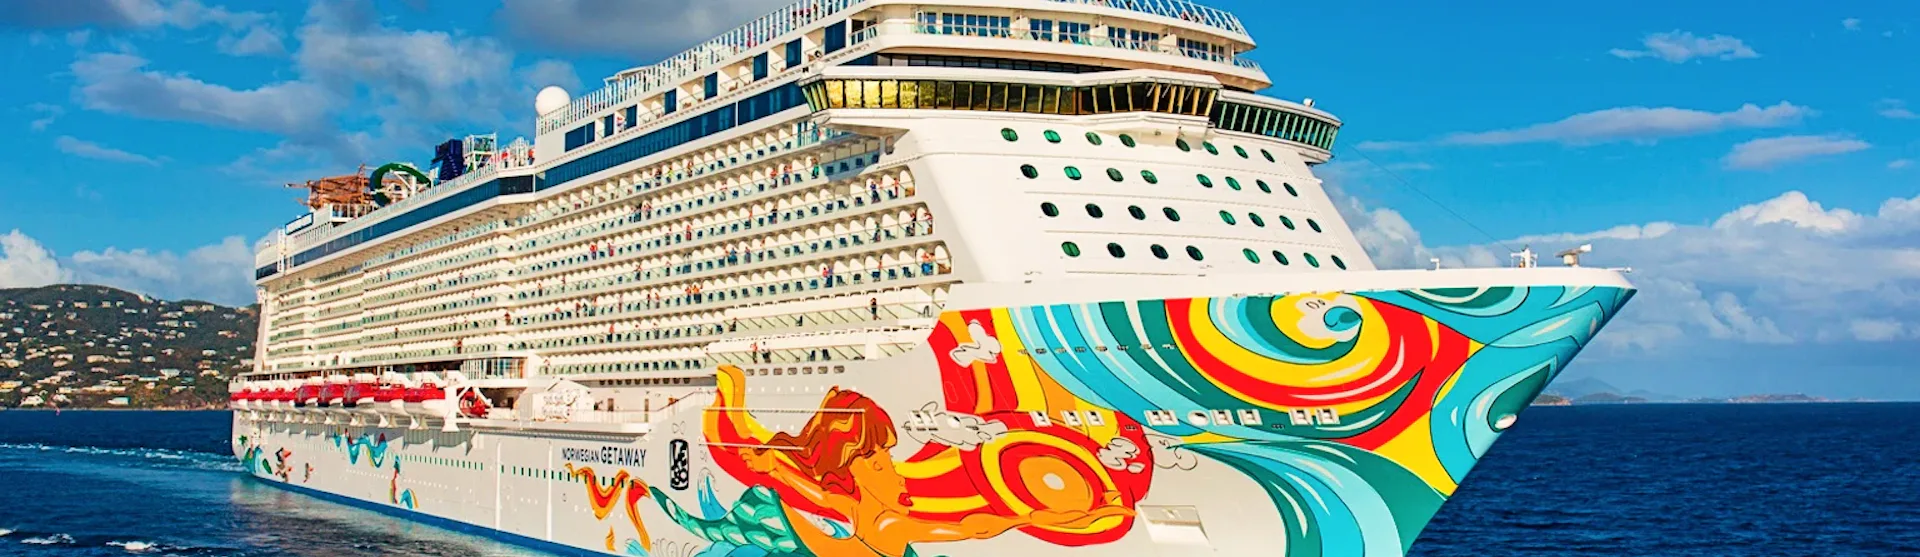 Norwegian Getaway - Norwegian Cruise Line